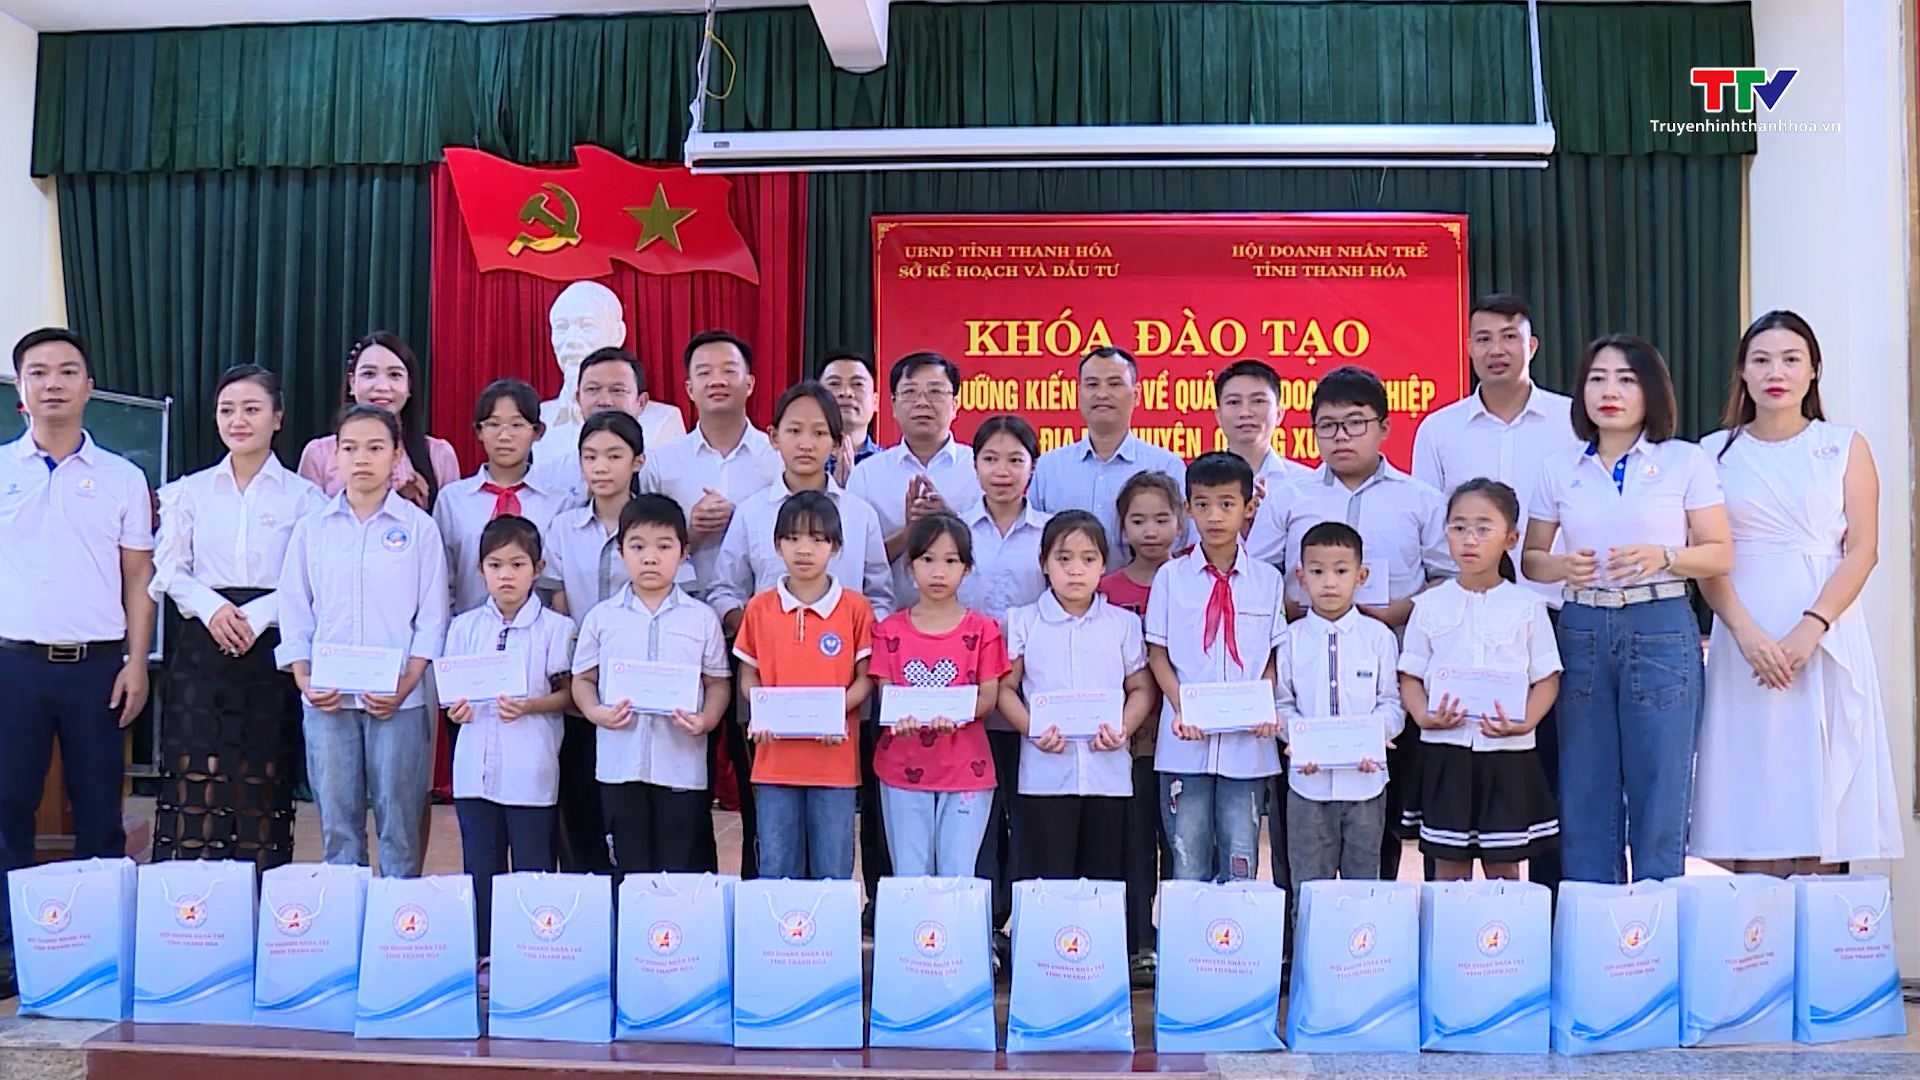 Doanh nhân trẻ tỉnh Thanh Hoá chung sức vì cộng đồng - Ảnh 5.